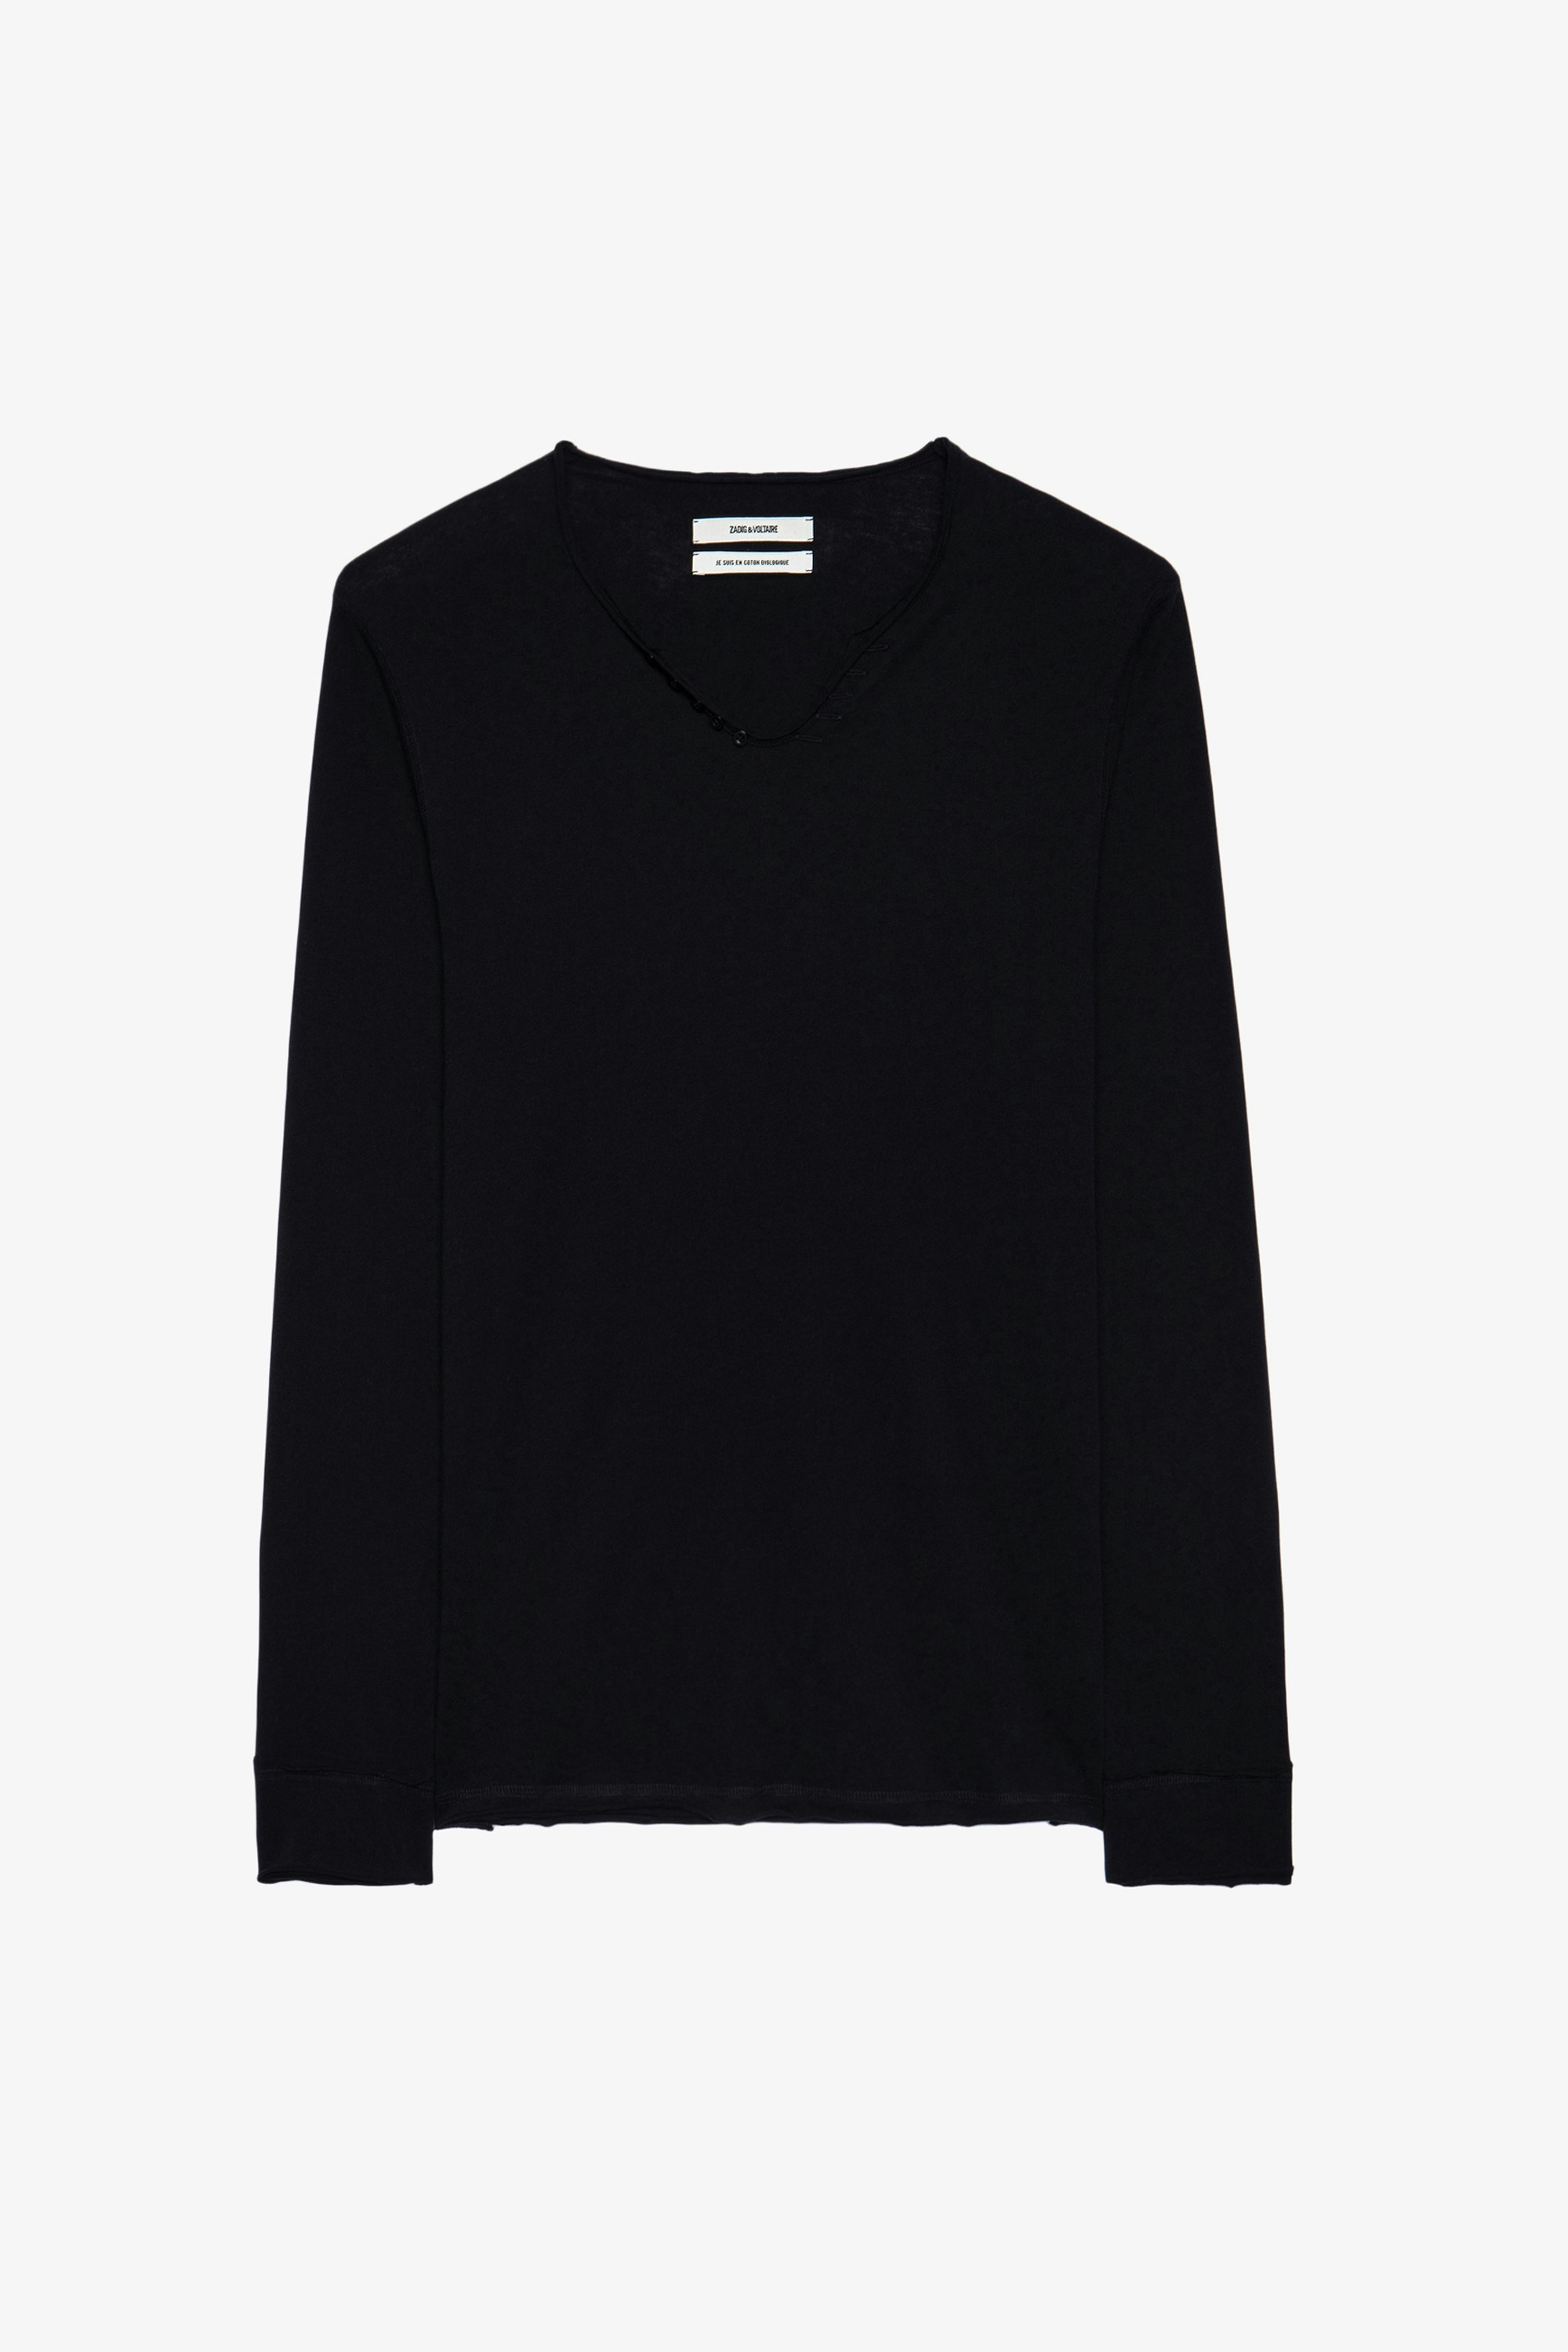 Henley-T-Shirt Monastir - Schwarzes Herren-T-shirt aus Baumwolle mit Henley-Ausschnitt